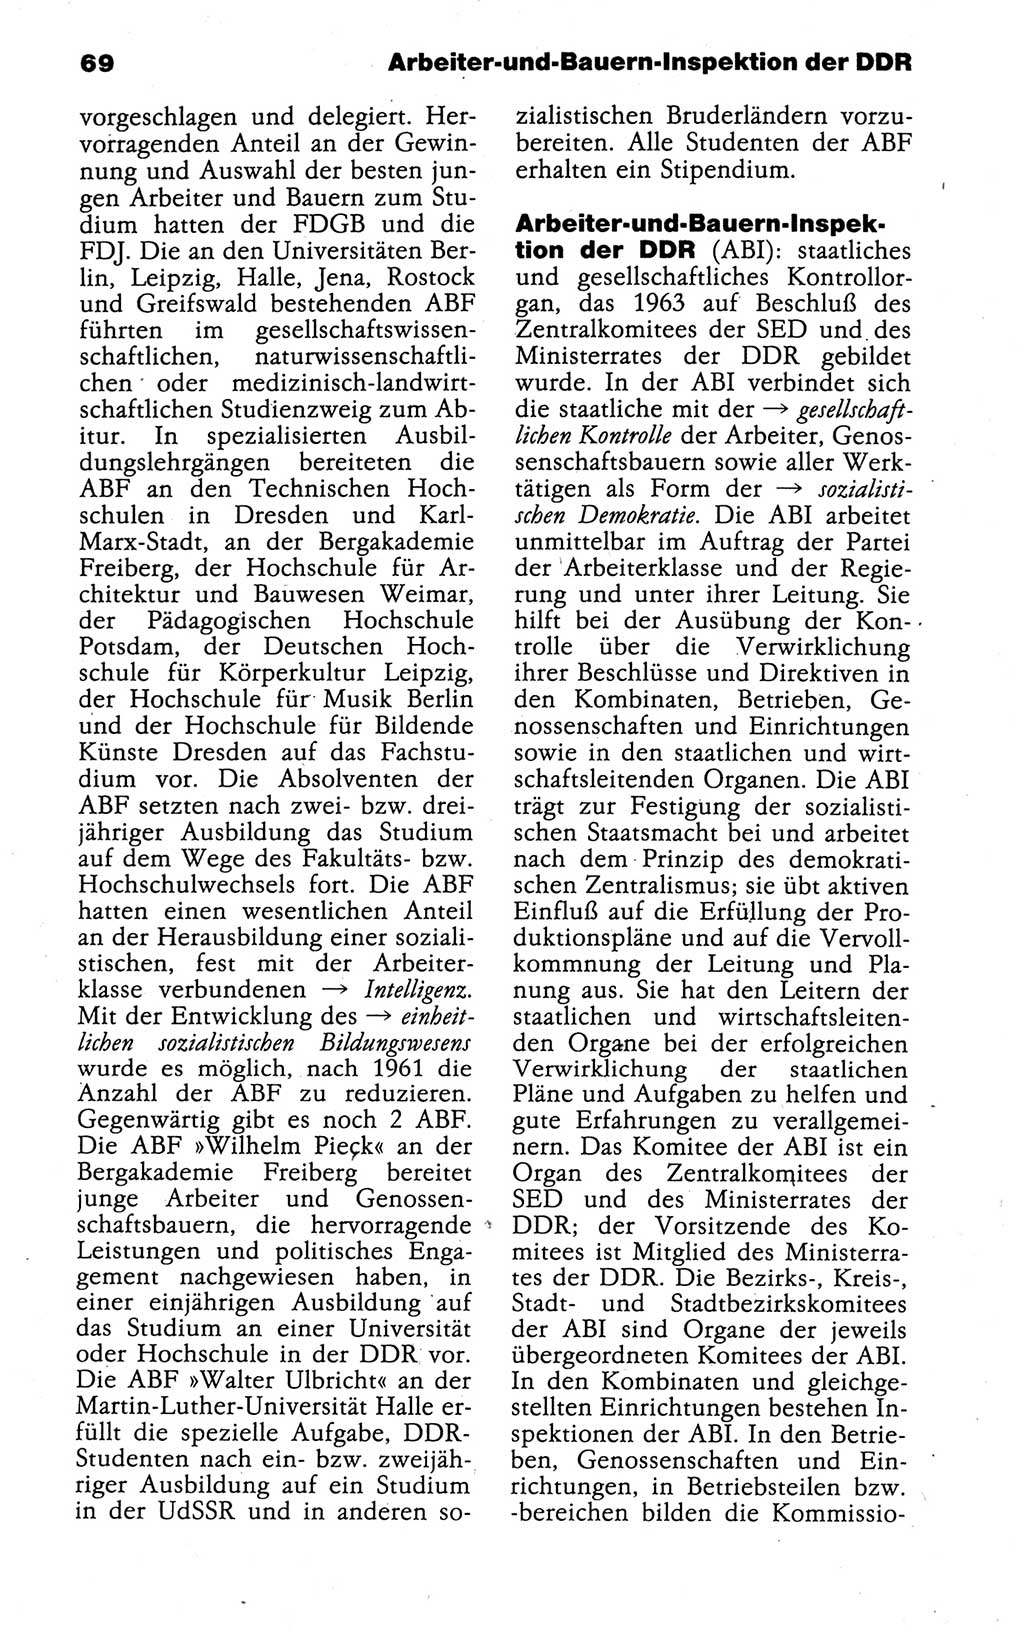 Kleines politisches Wörterbuch [Deutsche Demokratische Republik (DDR)] 1988, Seite 69 (Kl. pol. Wb. DDR 1988, S. 69)